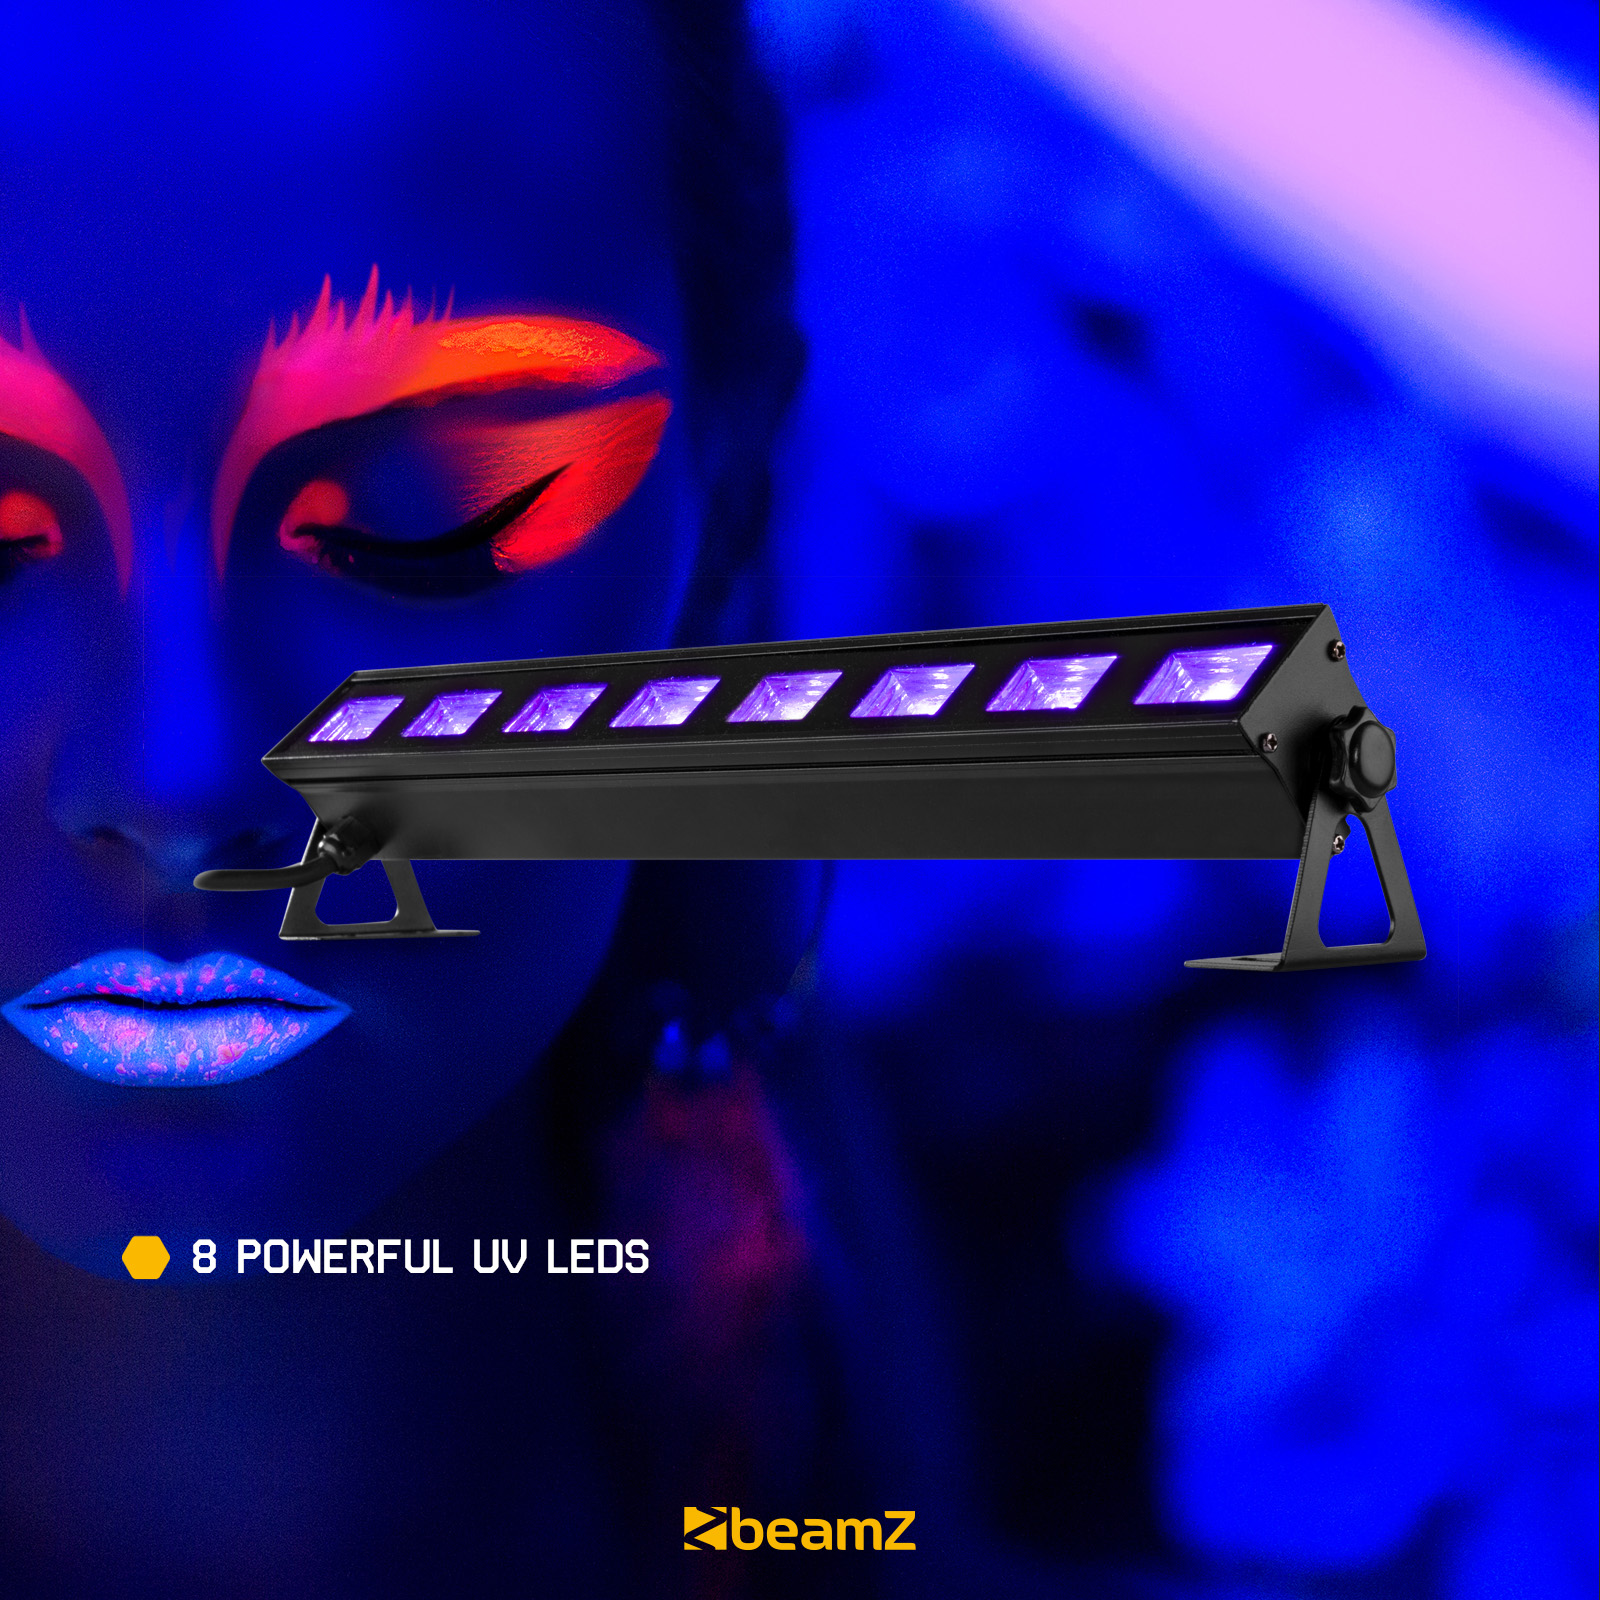 Barra de luz ultravioleta E-Lightning DJ UV-BAR 9.3, 9 LEDs de 3W UV -  Deffo Argentina